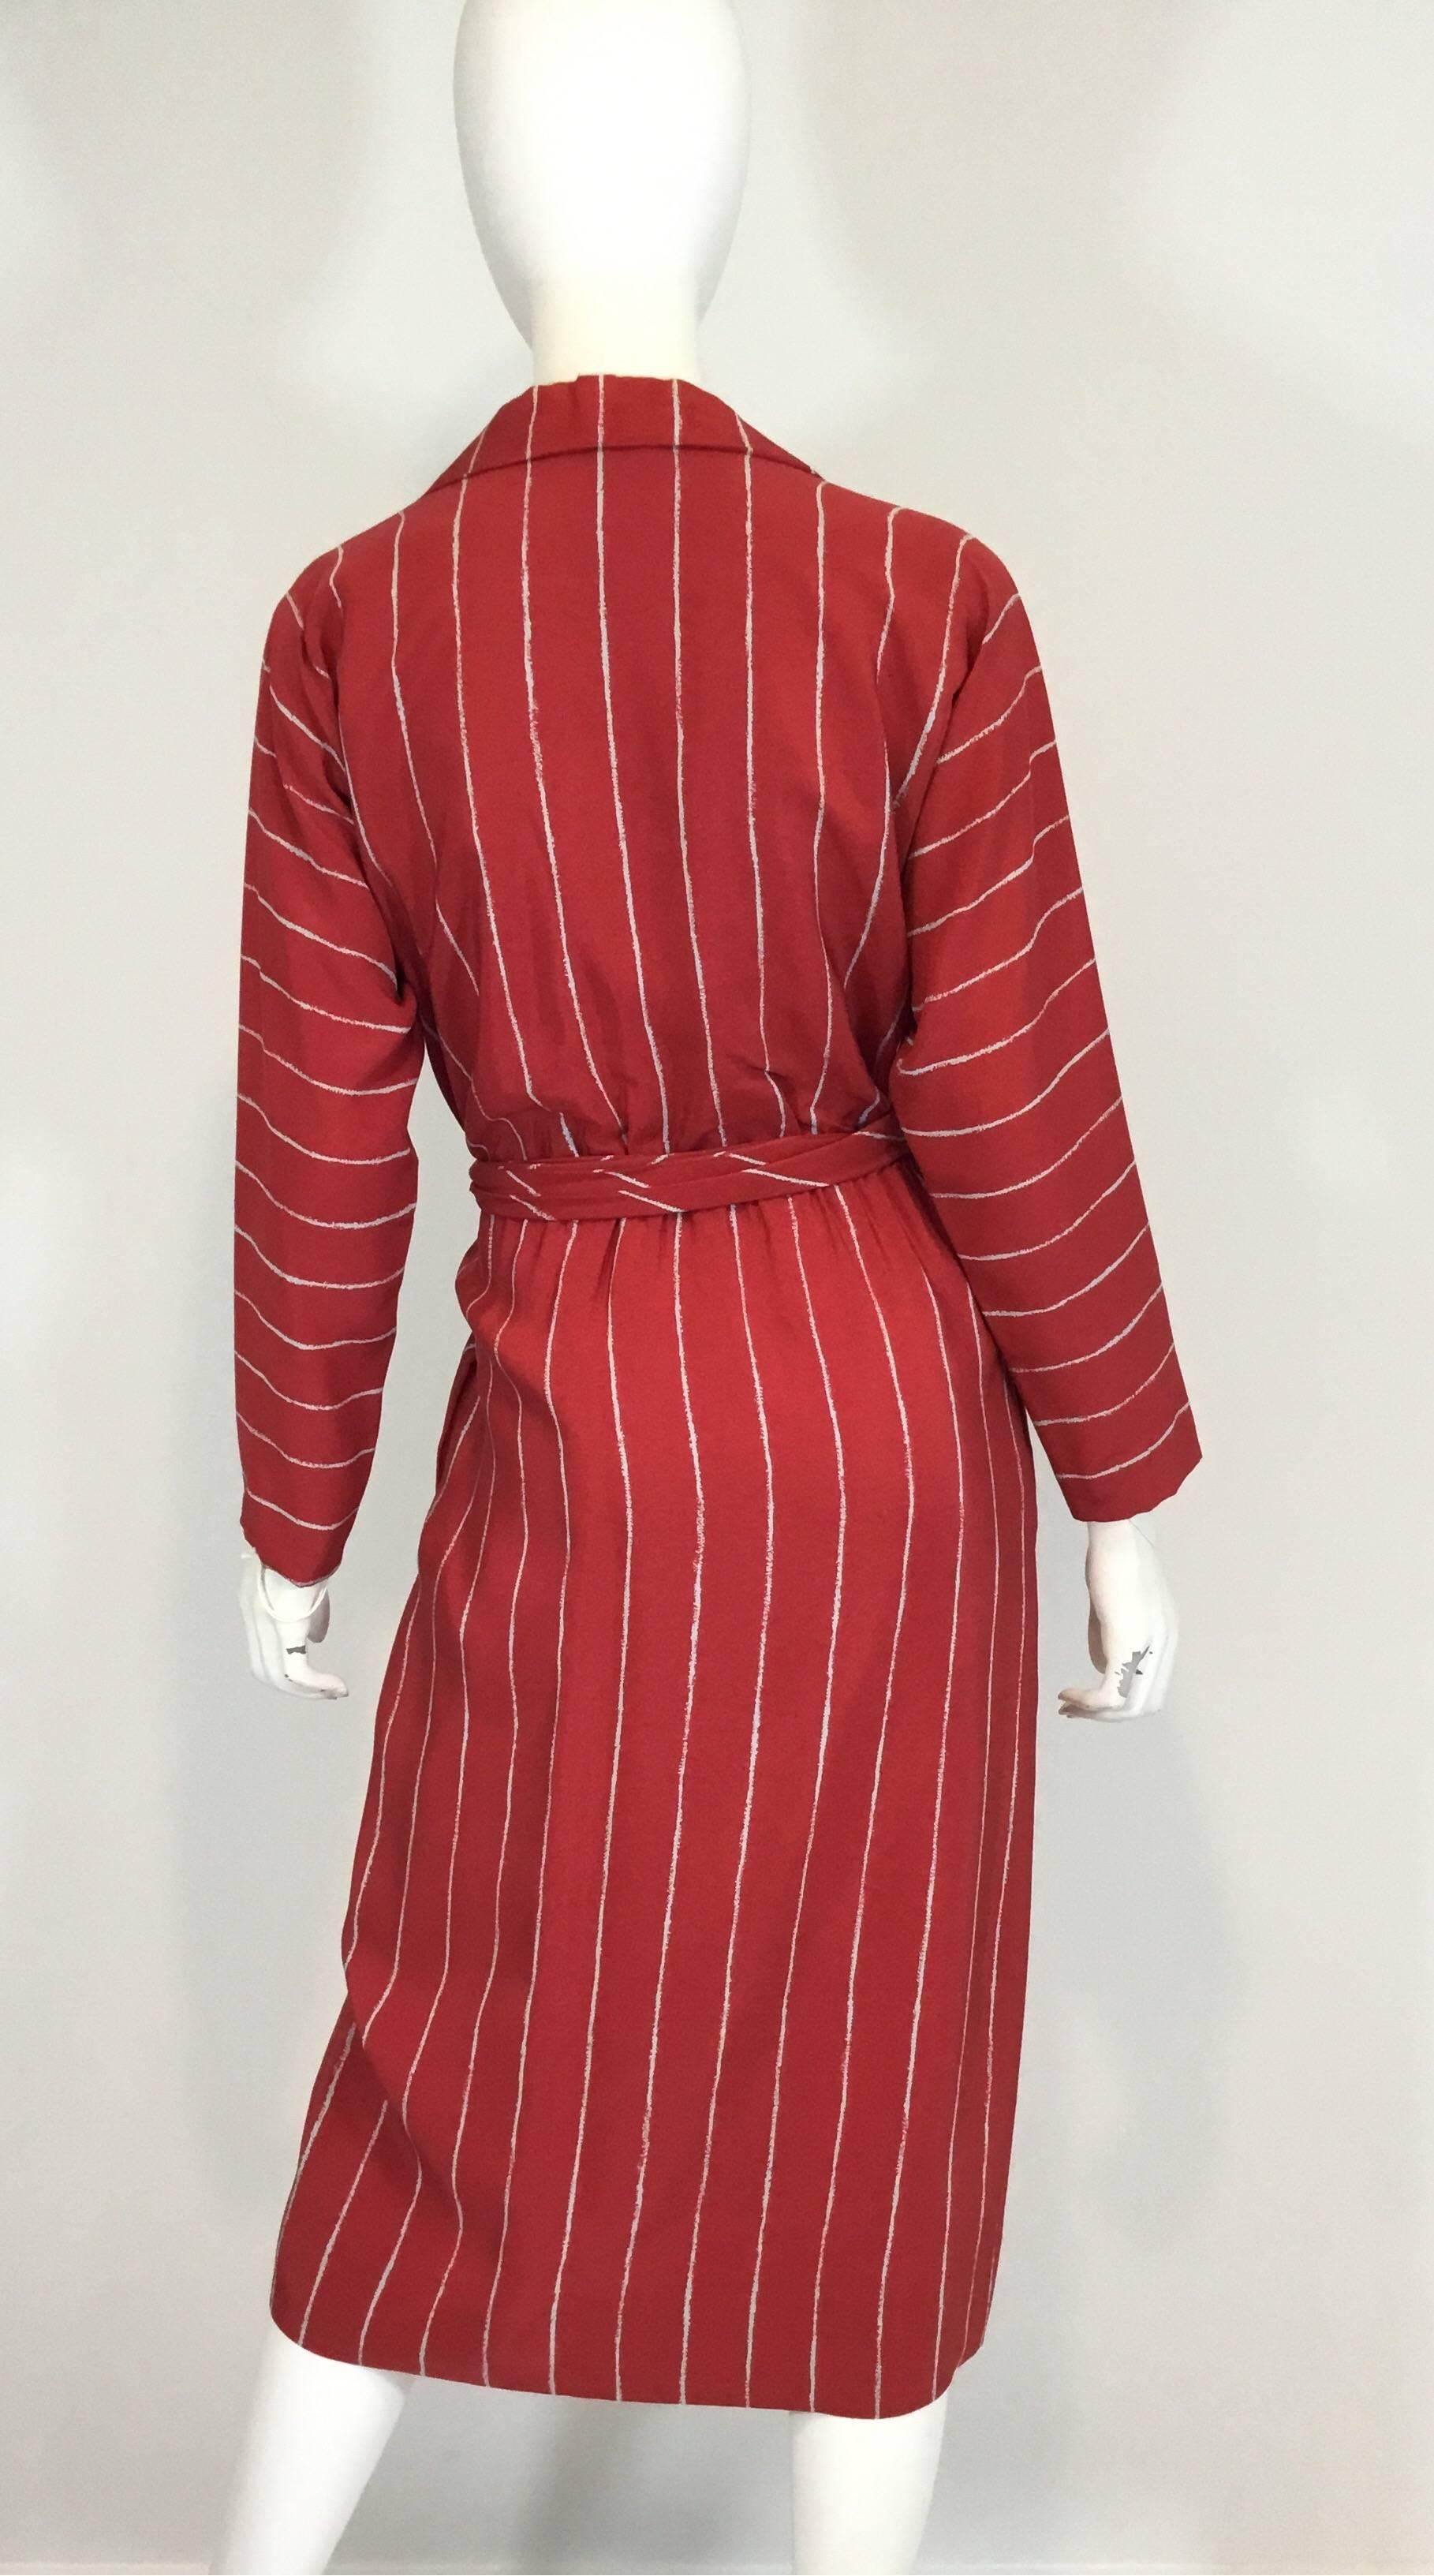 Halston Gestreiftes Vintage-Wickelkleid aus Seide mit Schärpe/Gürtel, 1970er Jahre (Rot)